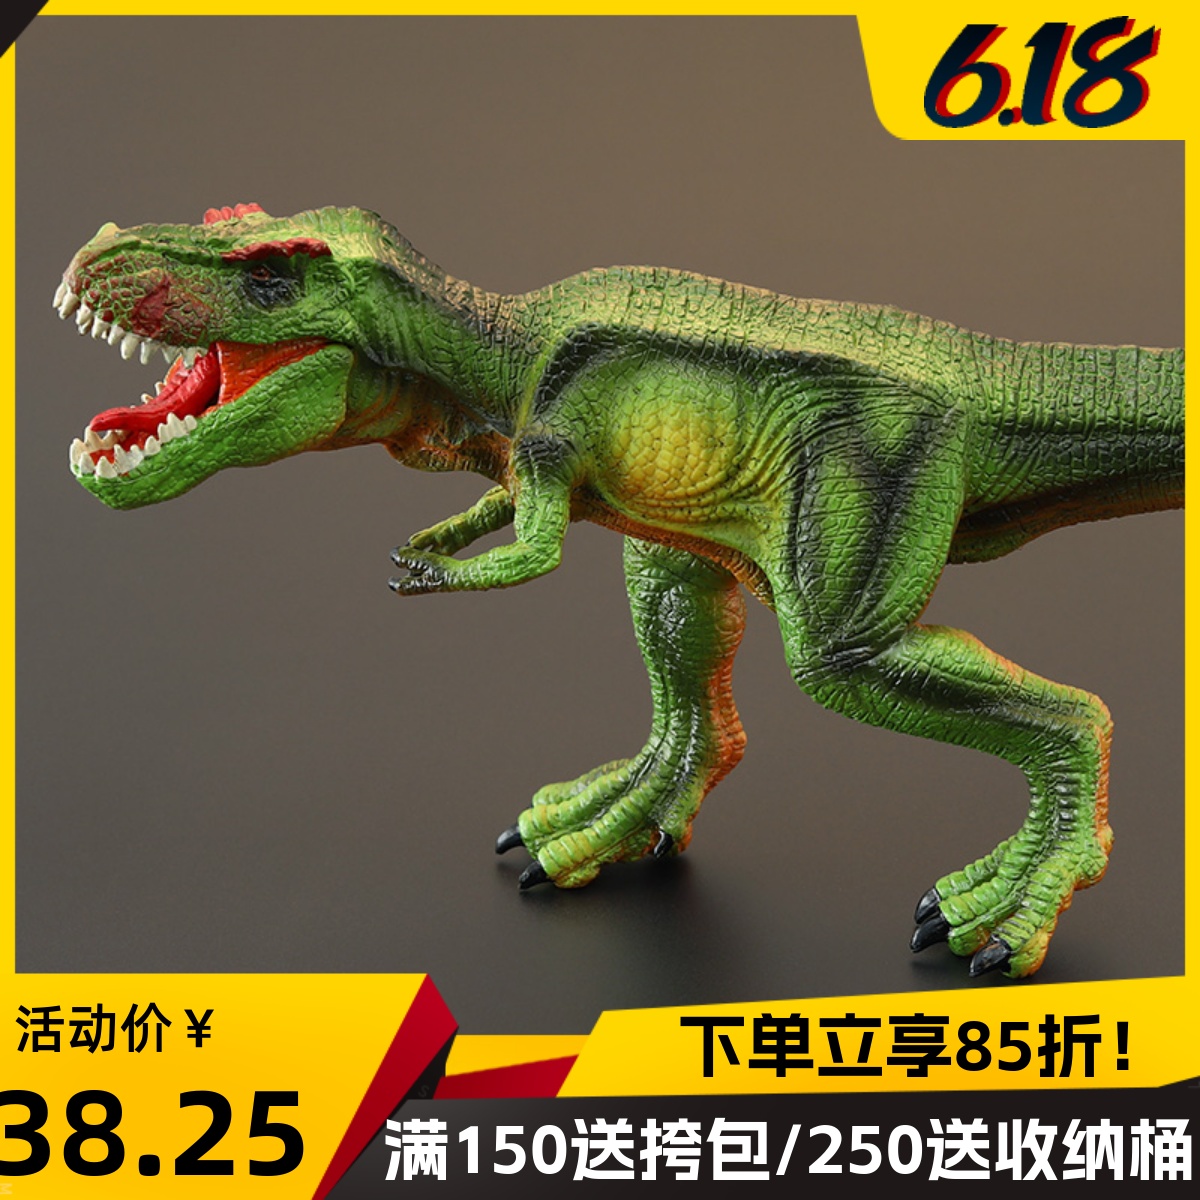 正版实心模型 侏罗纪恐龙世界仿真恐龙玩具 霸王龙 暴龙 雷克斯龙